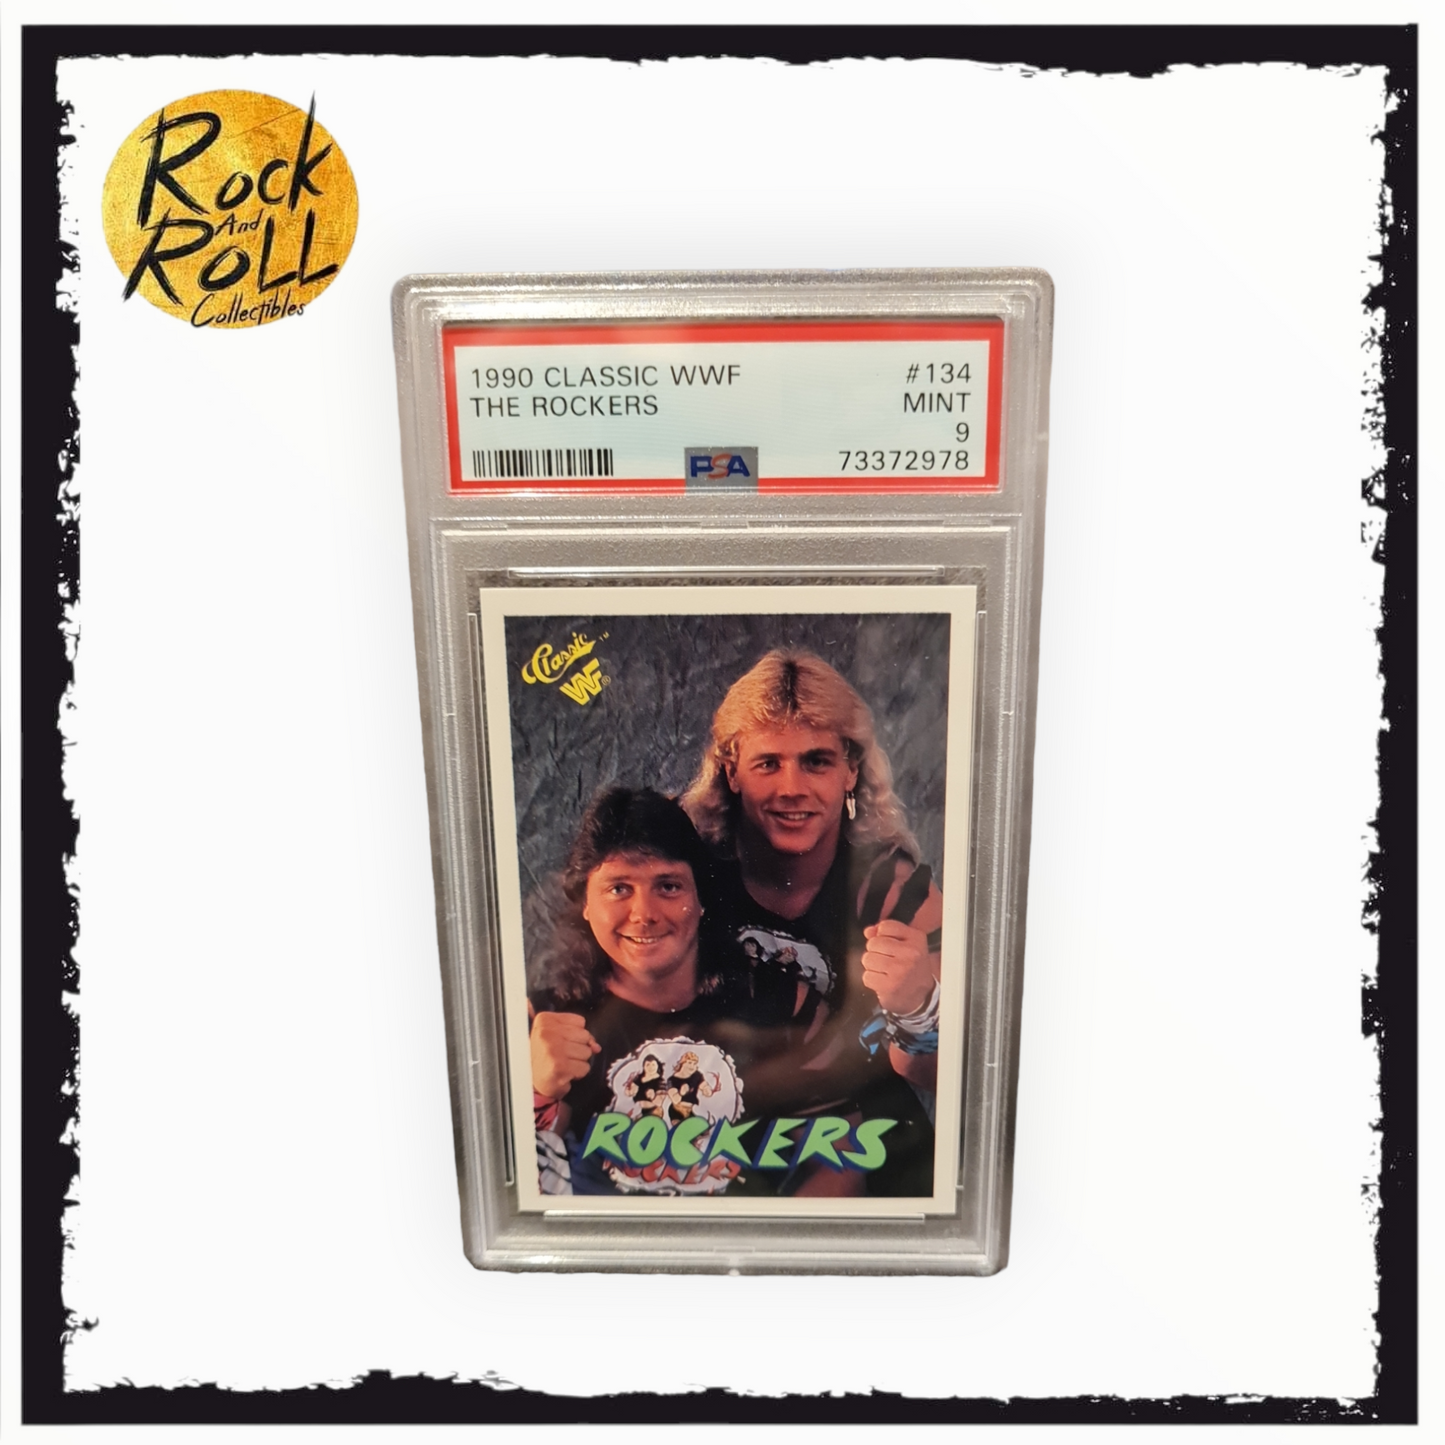 1990 Classic WWF The Rocker card #134 - PSA MINT 9